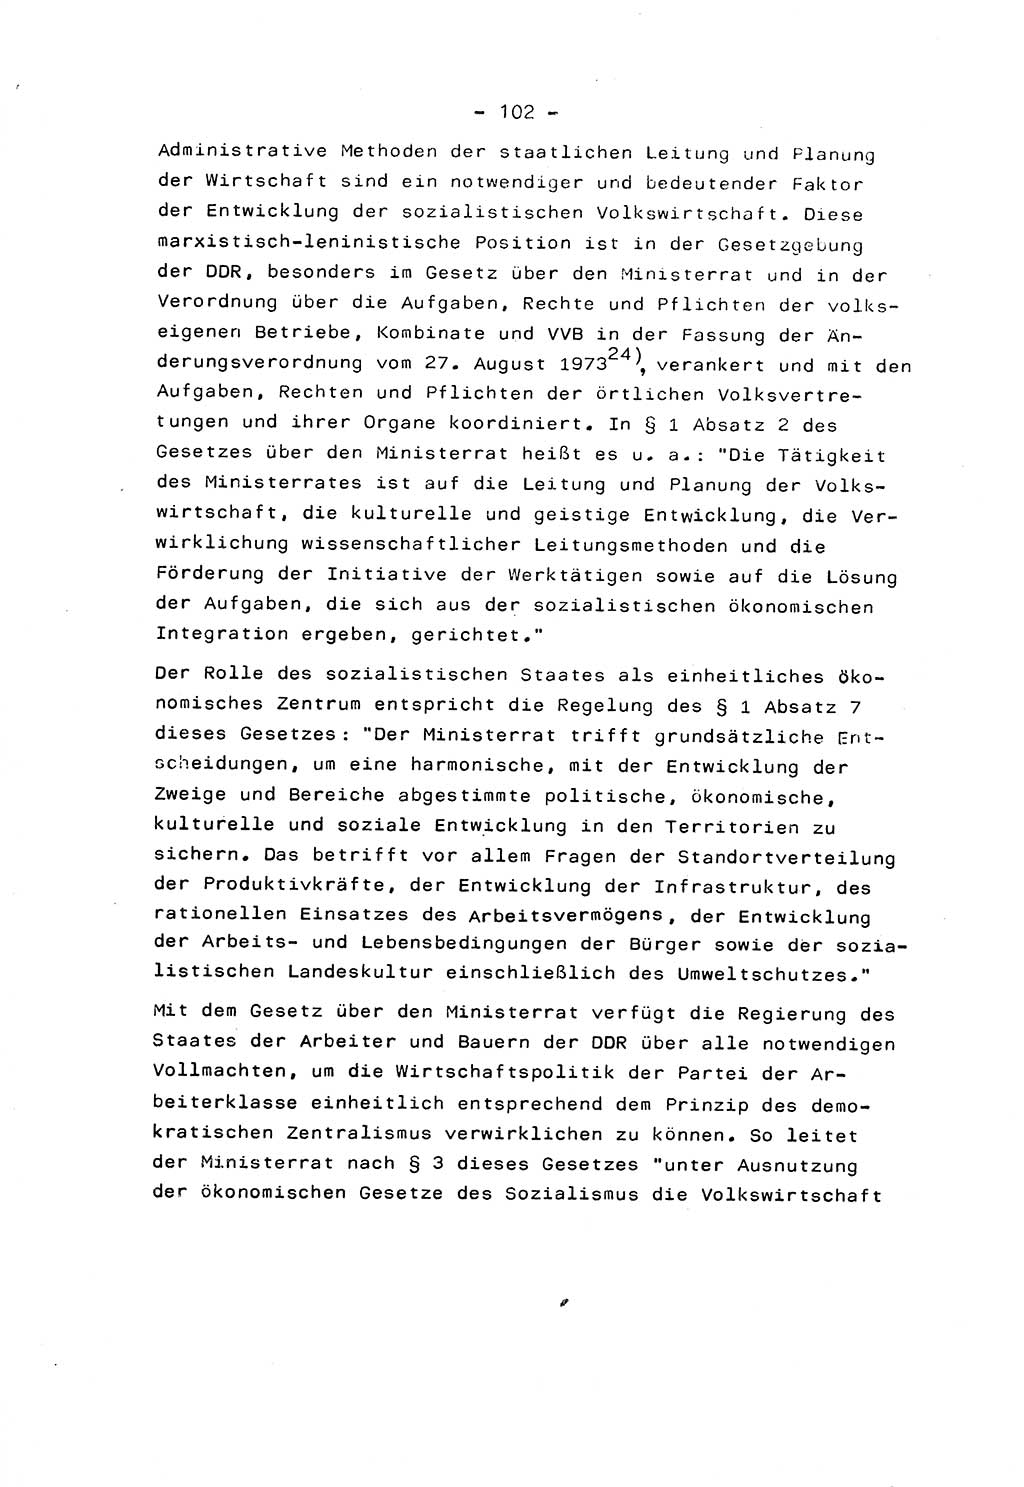 Marxistisch-leninistische Staats- und Rechtstheorie [Deutsche Demokratische Republik (DDR)] 1975, Seite 102 (ML St.-R.-Th. DDR 1975, S. 102)